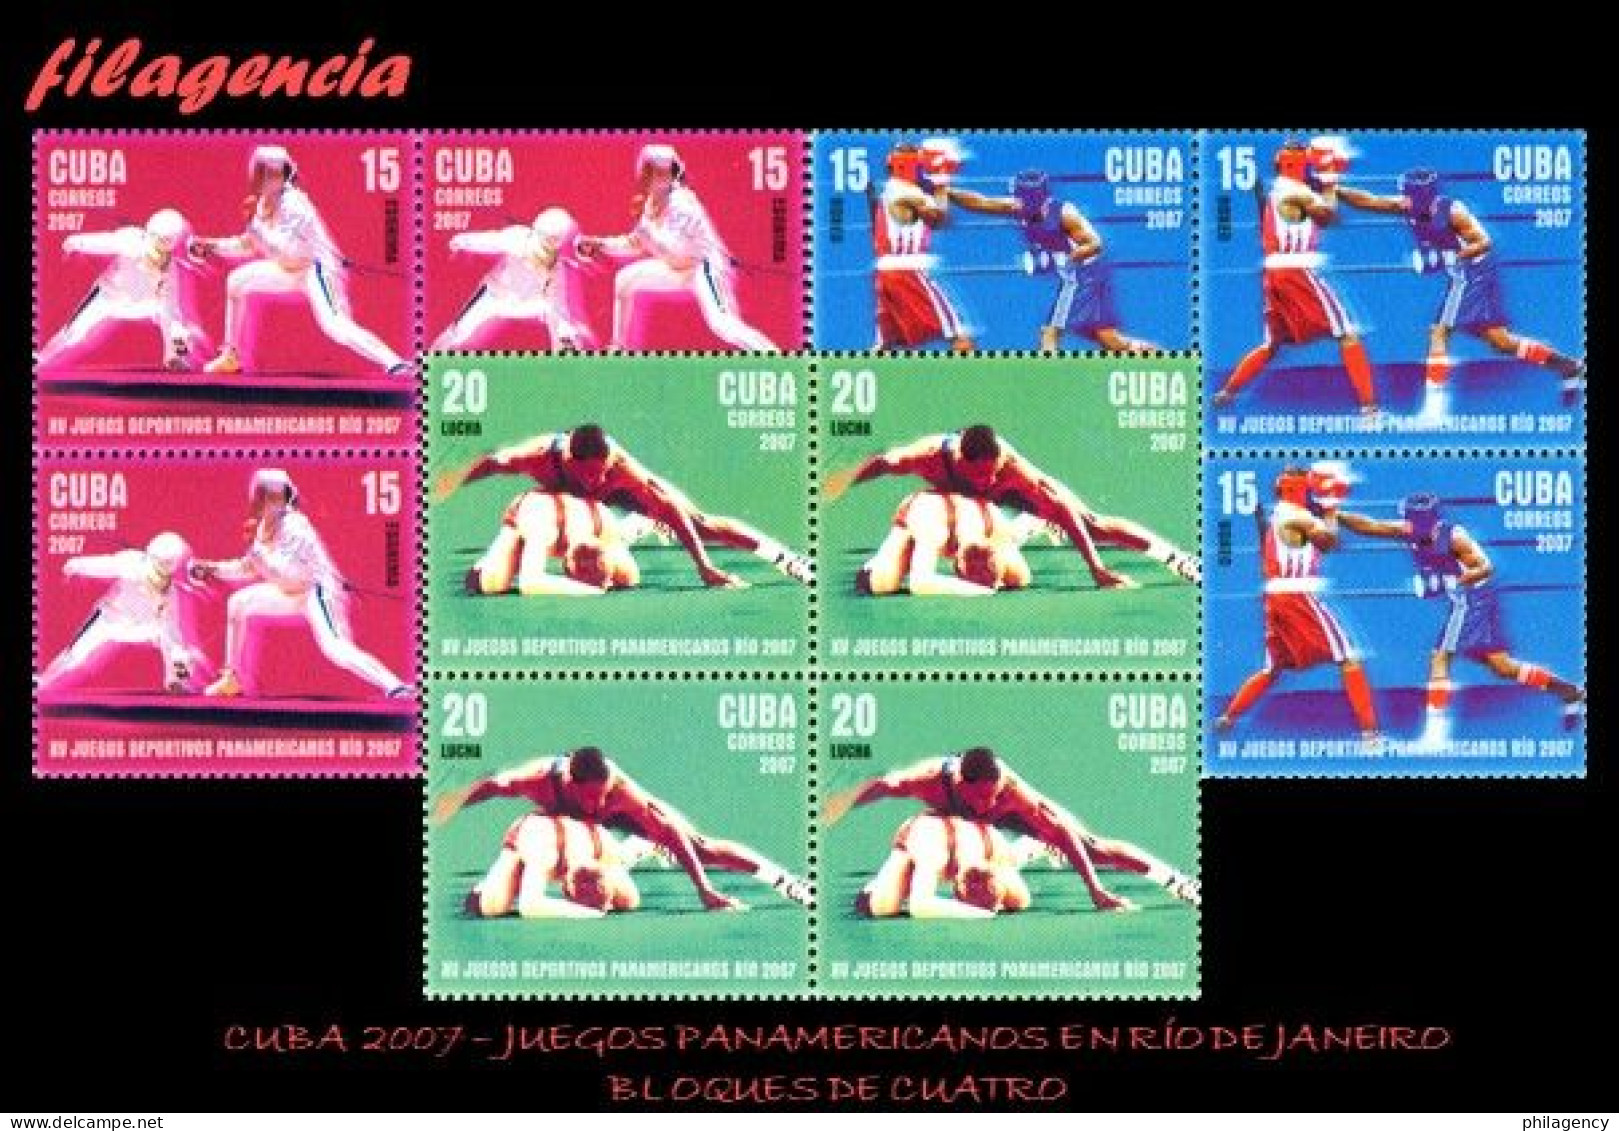 CUBA. BLOQUES DE CUATRO. 2007-21 JUEGOS PANAMERICANOS EN RÍO DE JANEIRO - Neufs